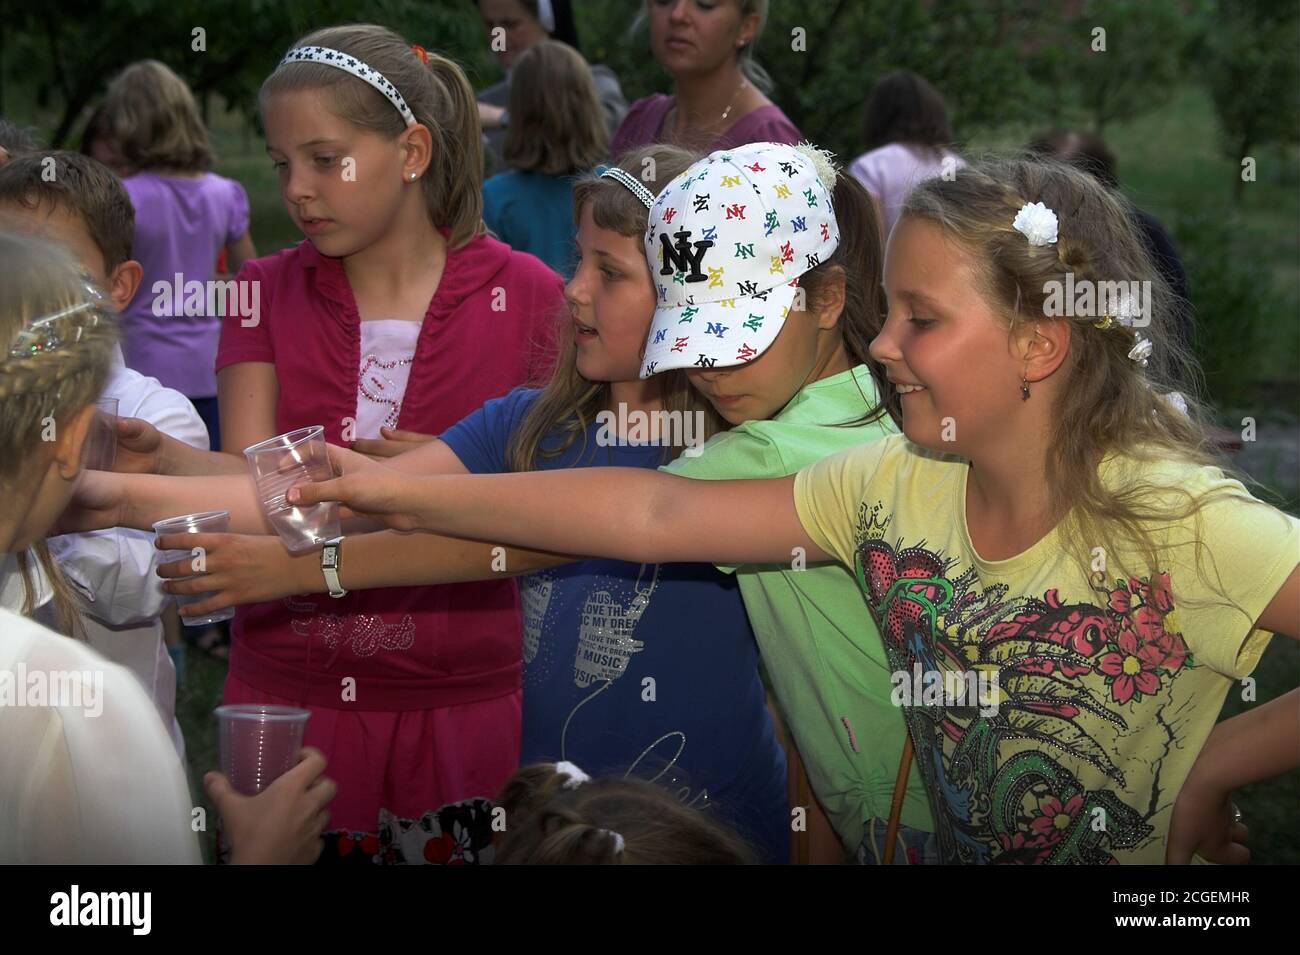 Poland Children at a picnic holding out their hands with cups for a drink. Kinder bei einem Picknick halten ihre Hände mit Tassen für einen Drink aus. Stock Photo